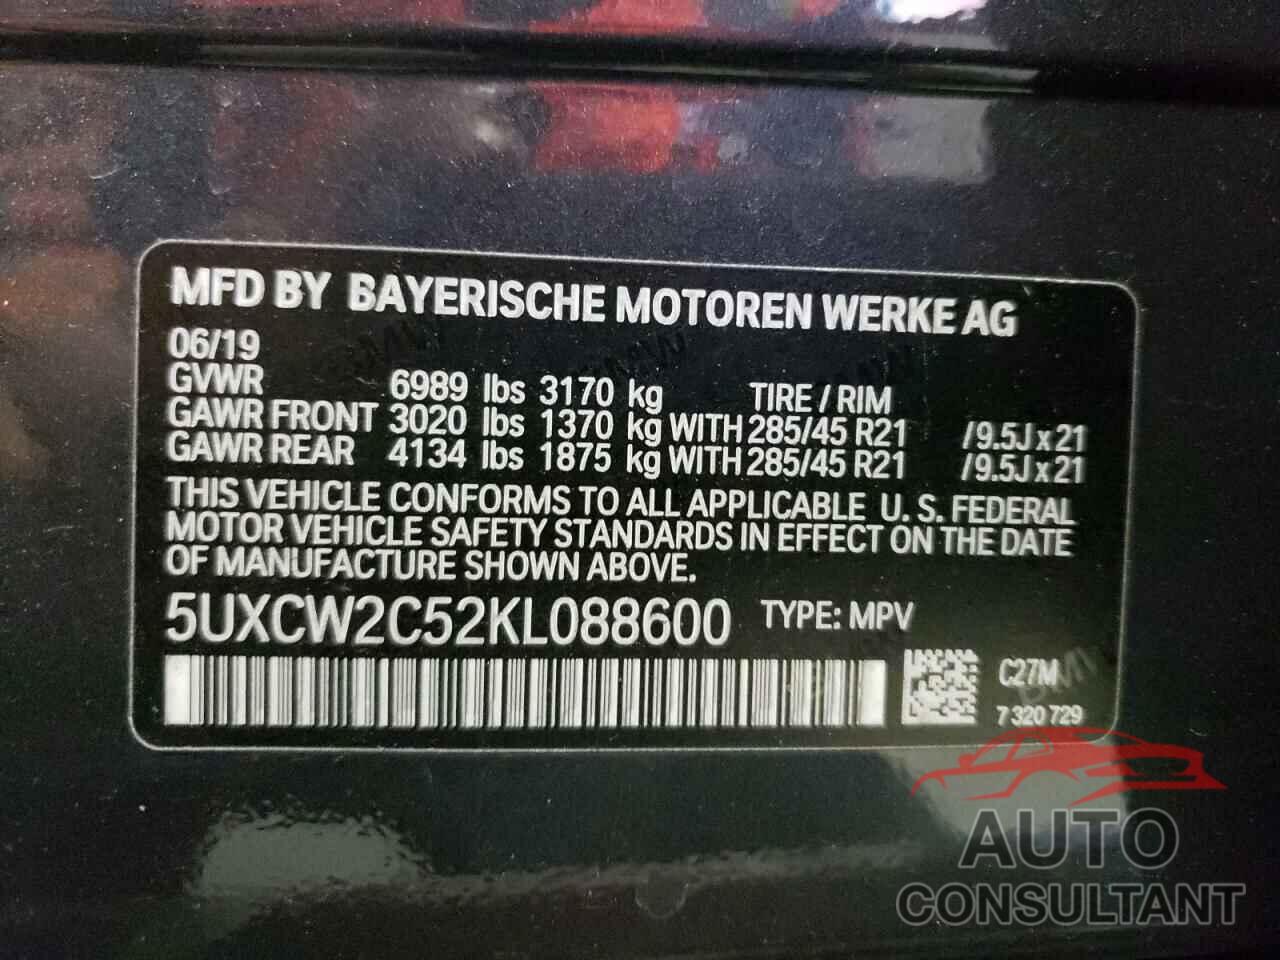 BMW X7 2019 - 5UXCW2C52KL088600